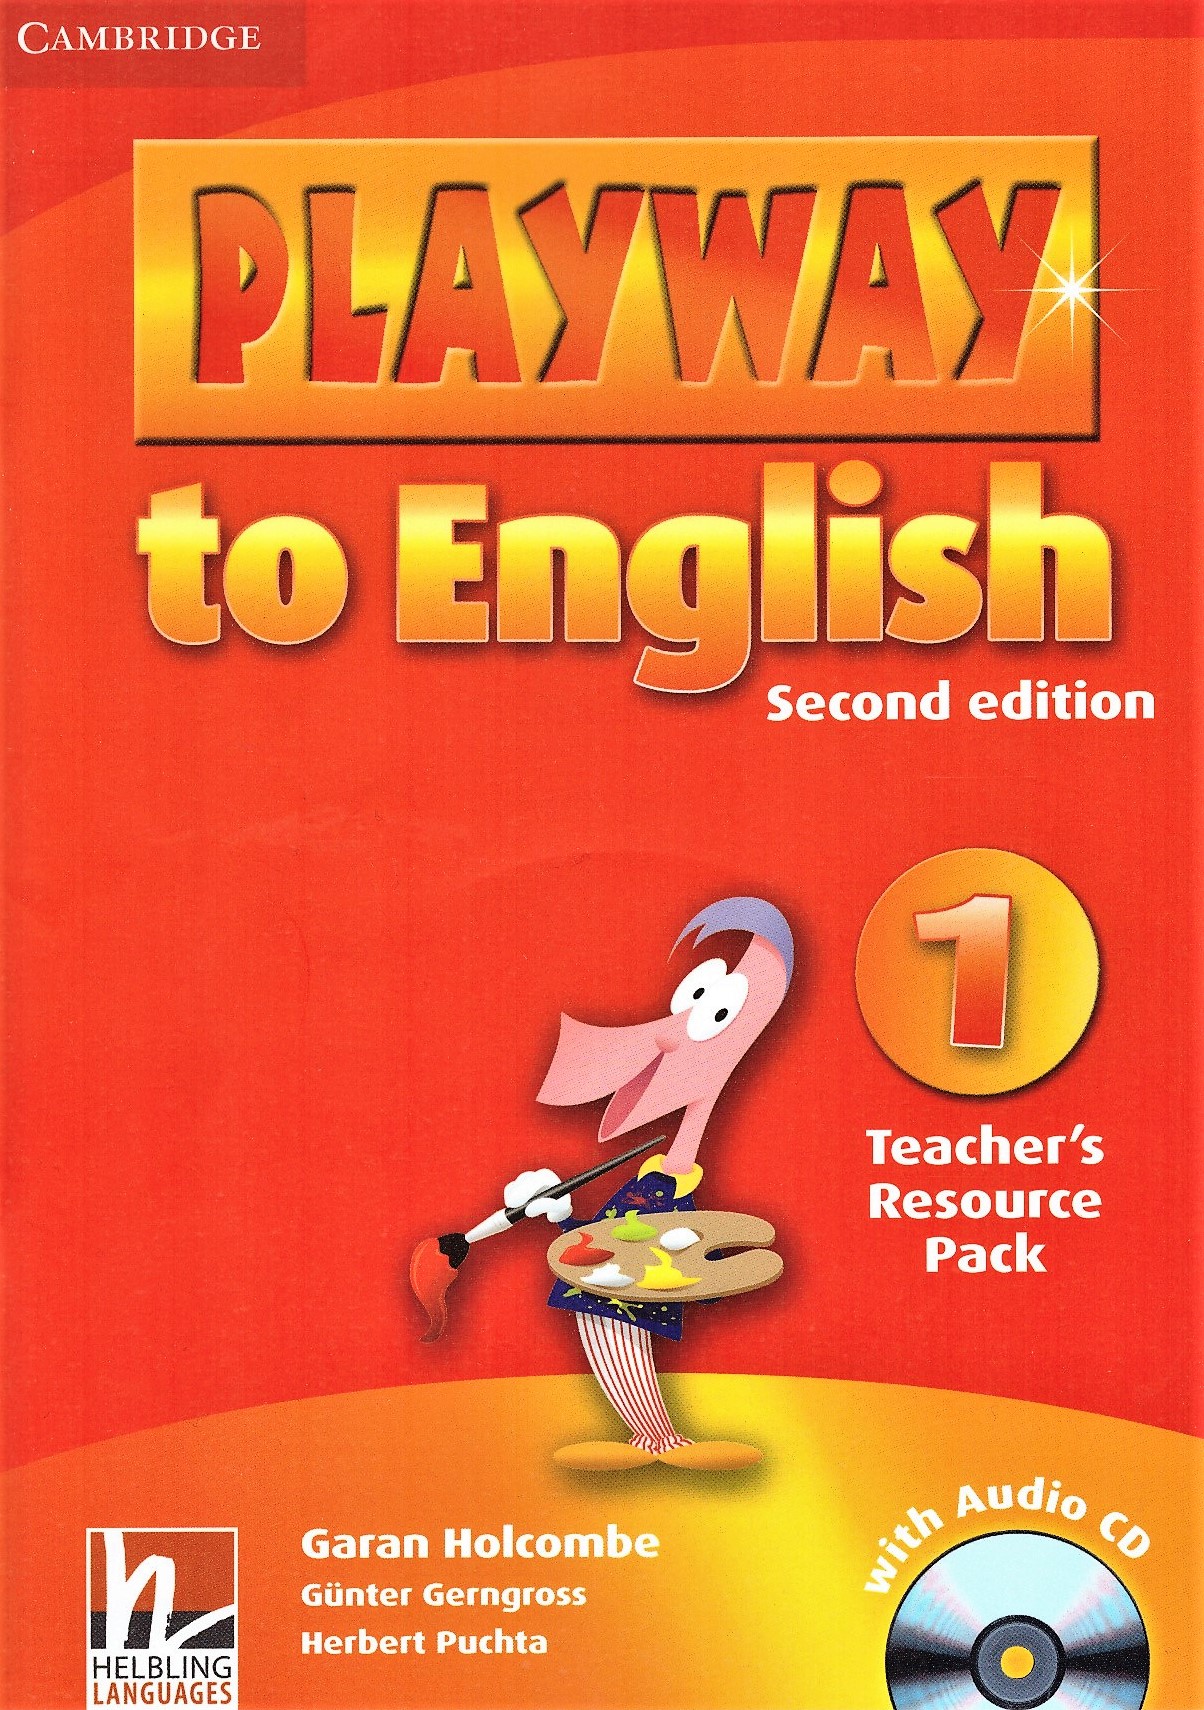 Playway to English 1 Teacher's Resource Pack + Audio CD / Дополнительные материалы для учителя